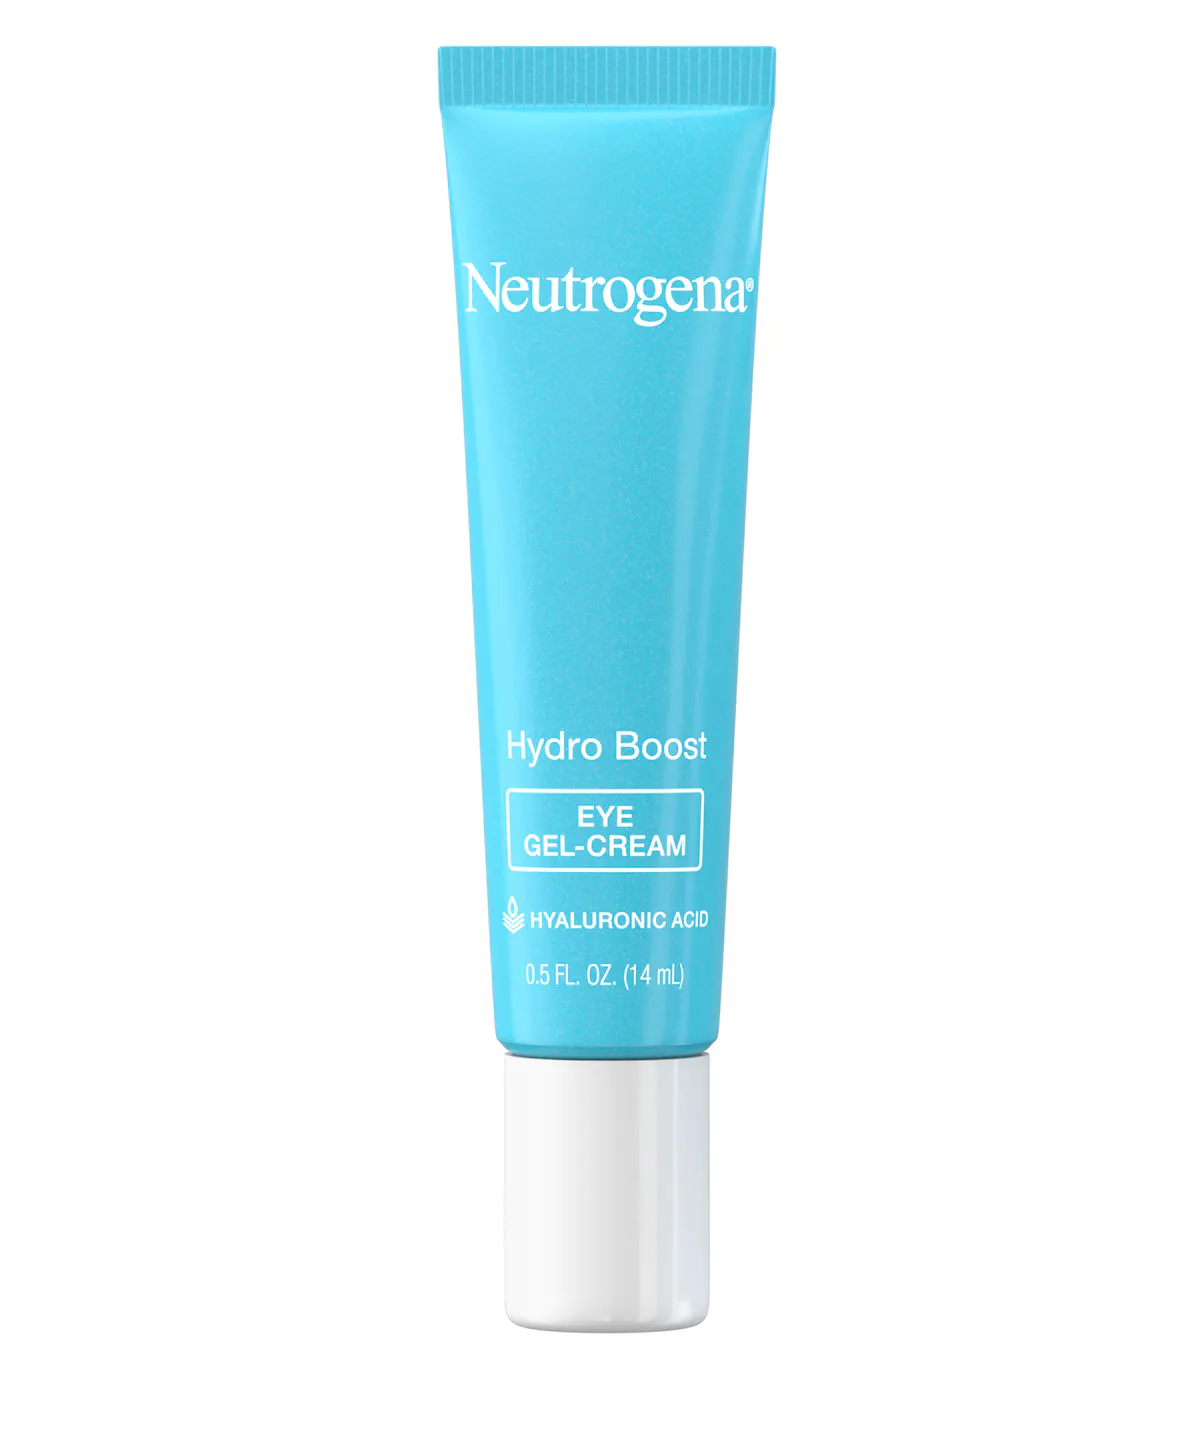 Neutrogena Hydro Boost Eye-Gel Cream